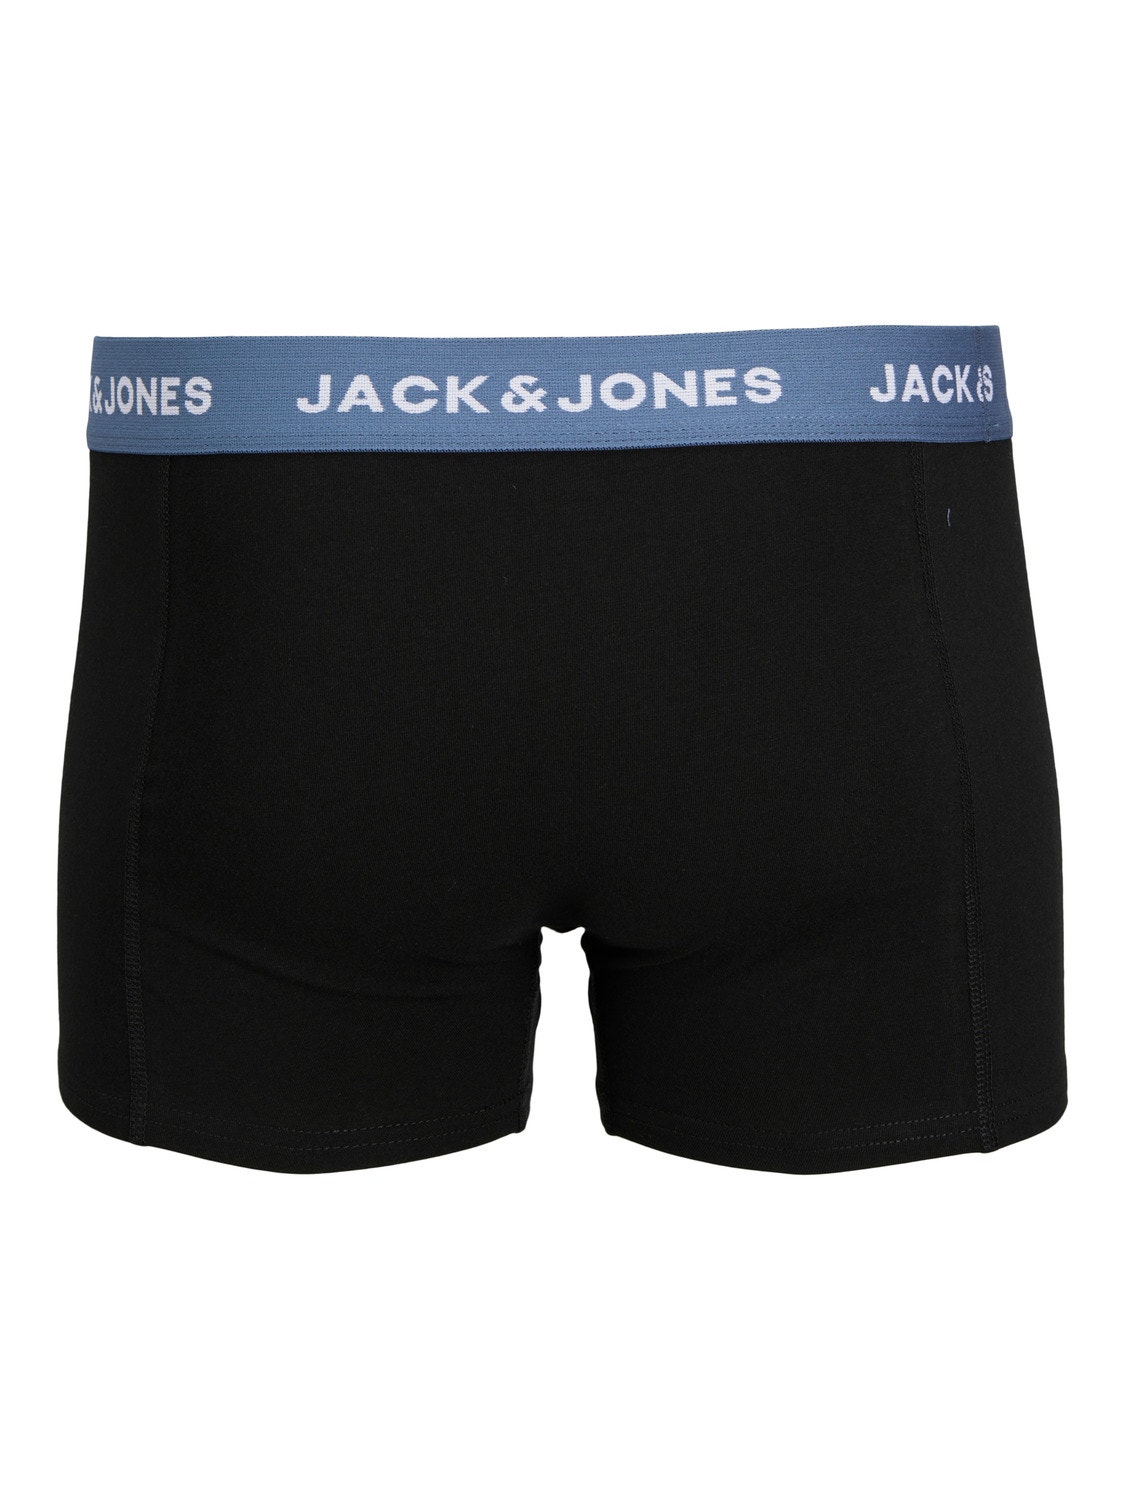 Jack & Jones 5-pakuotės Trumpikės -Black - 12254366